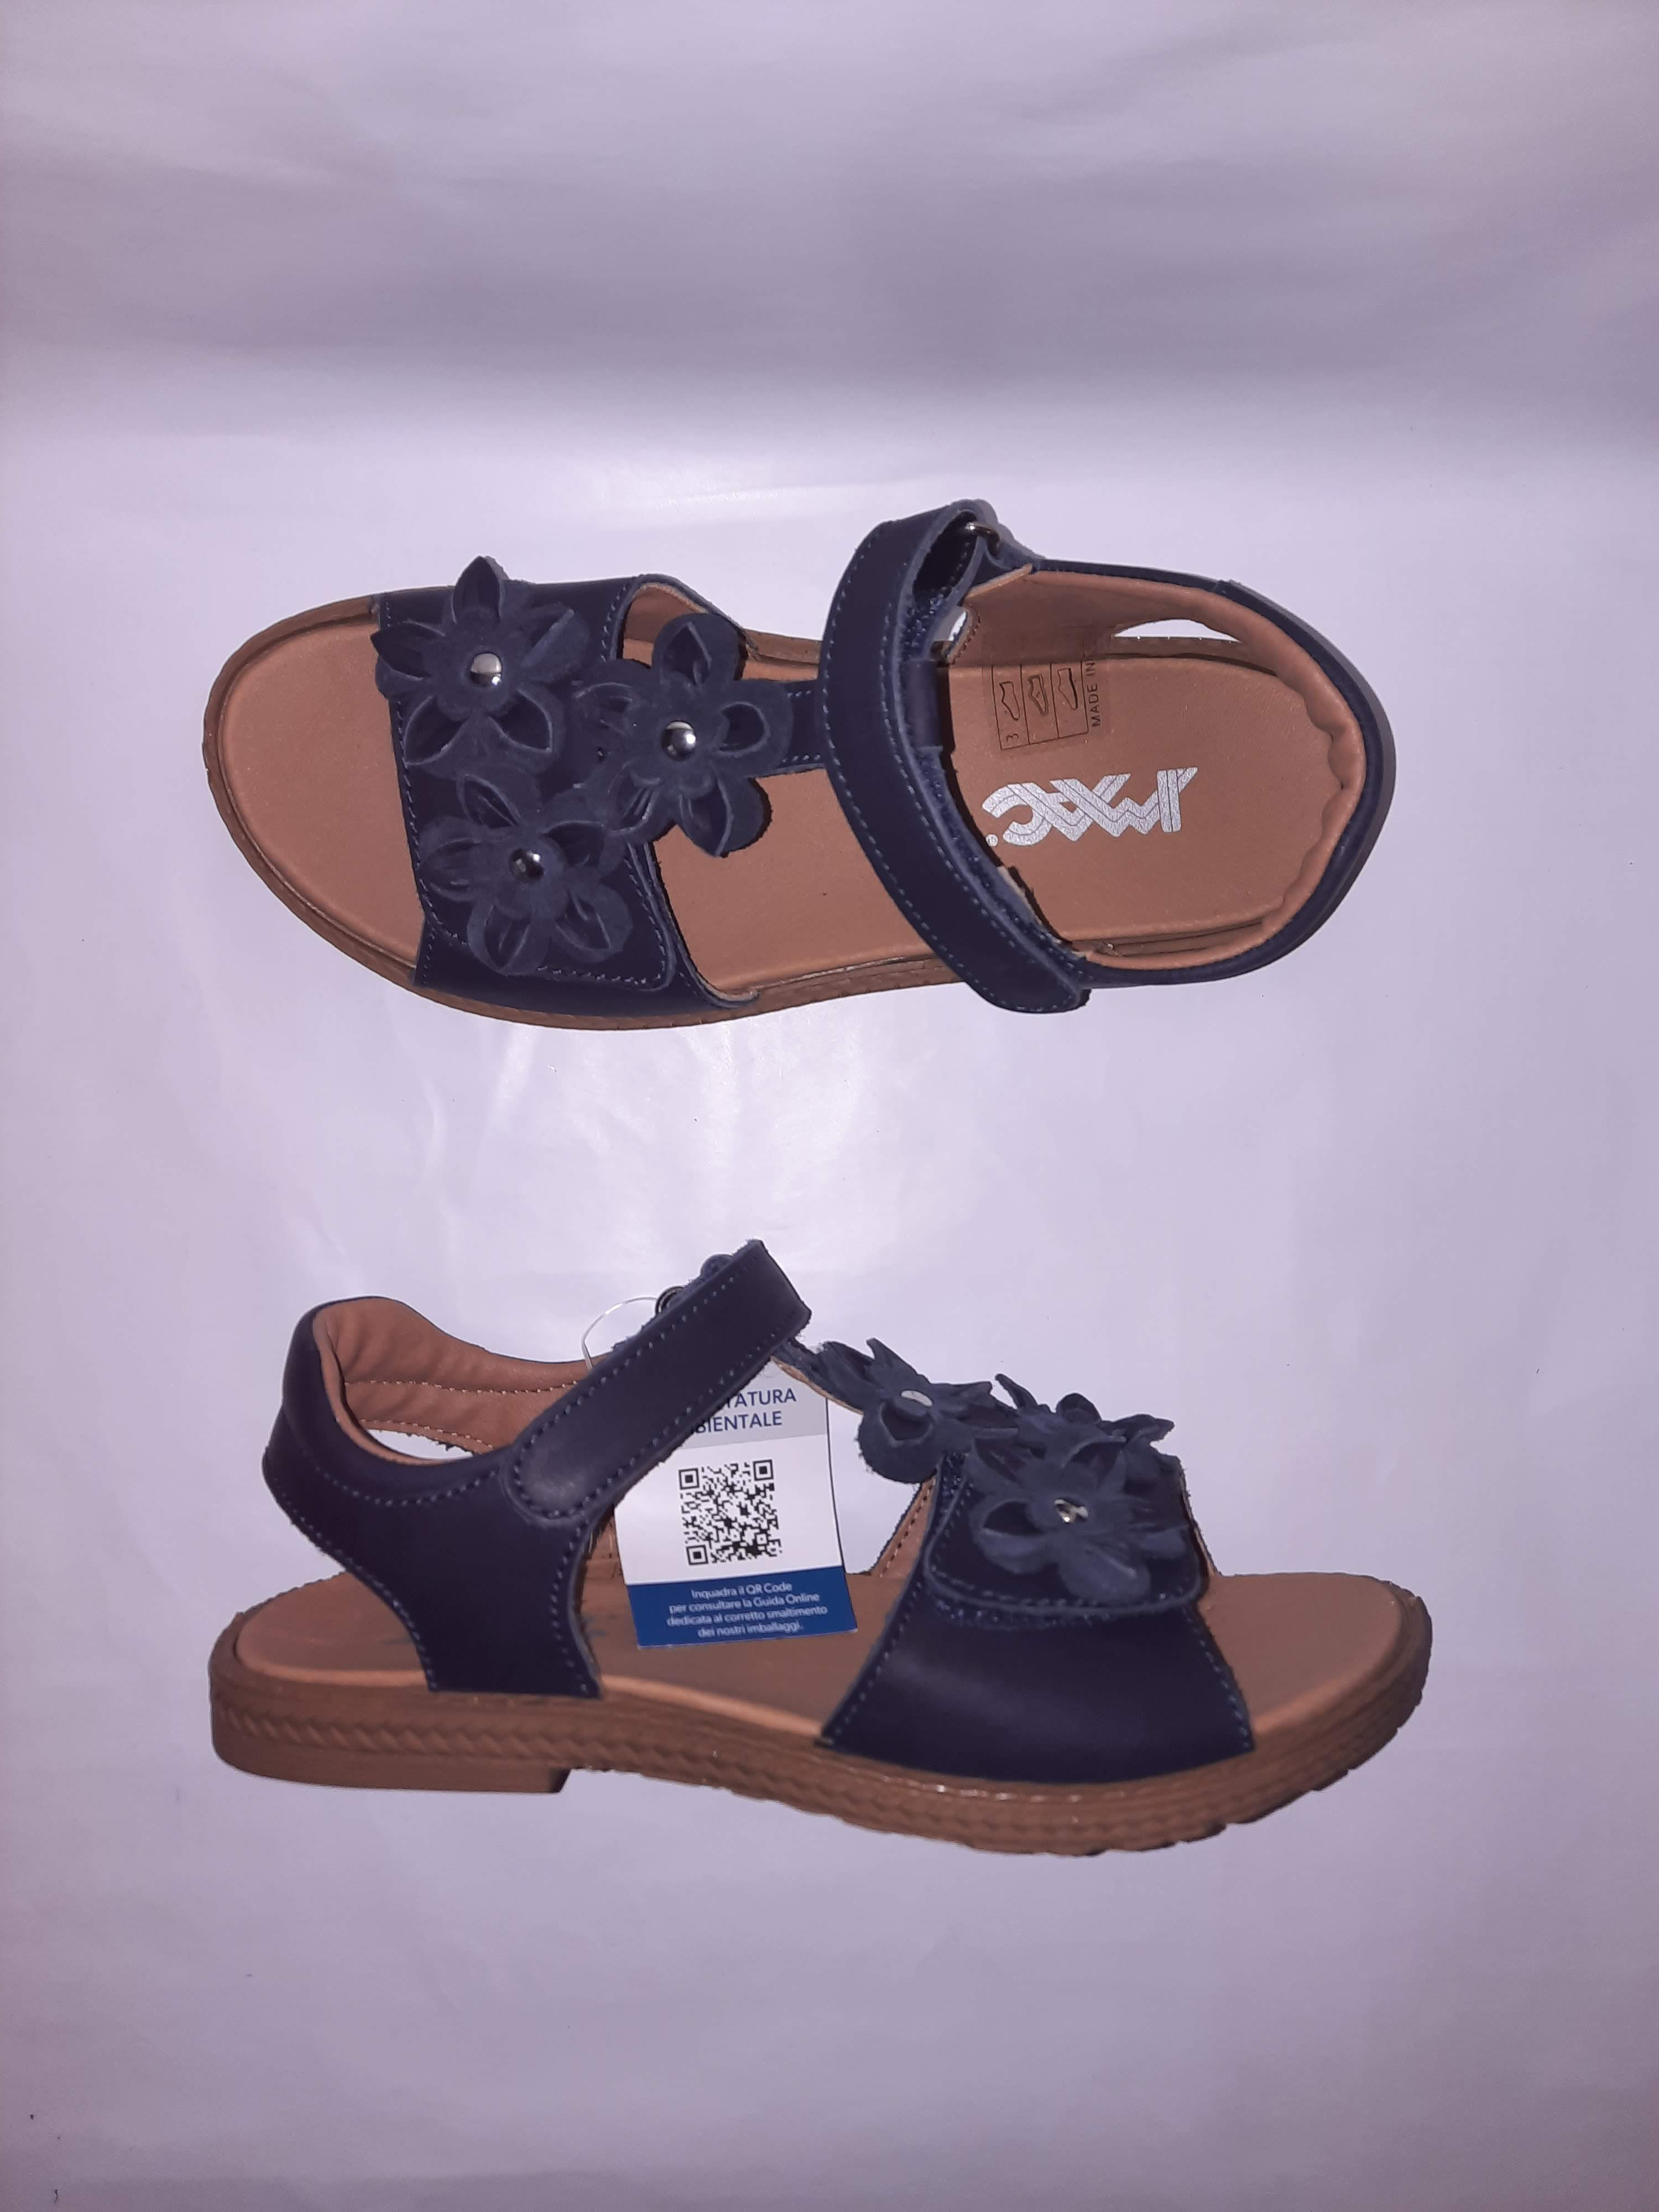 IMAC letní sandálky Amelia blue/black 377424 Velikost: 36